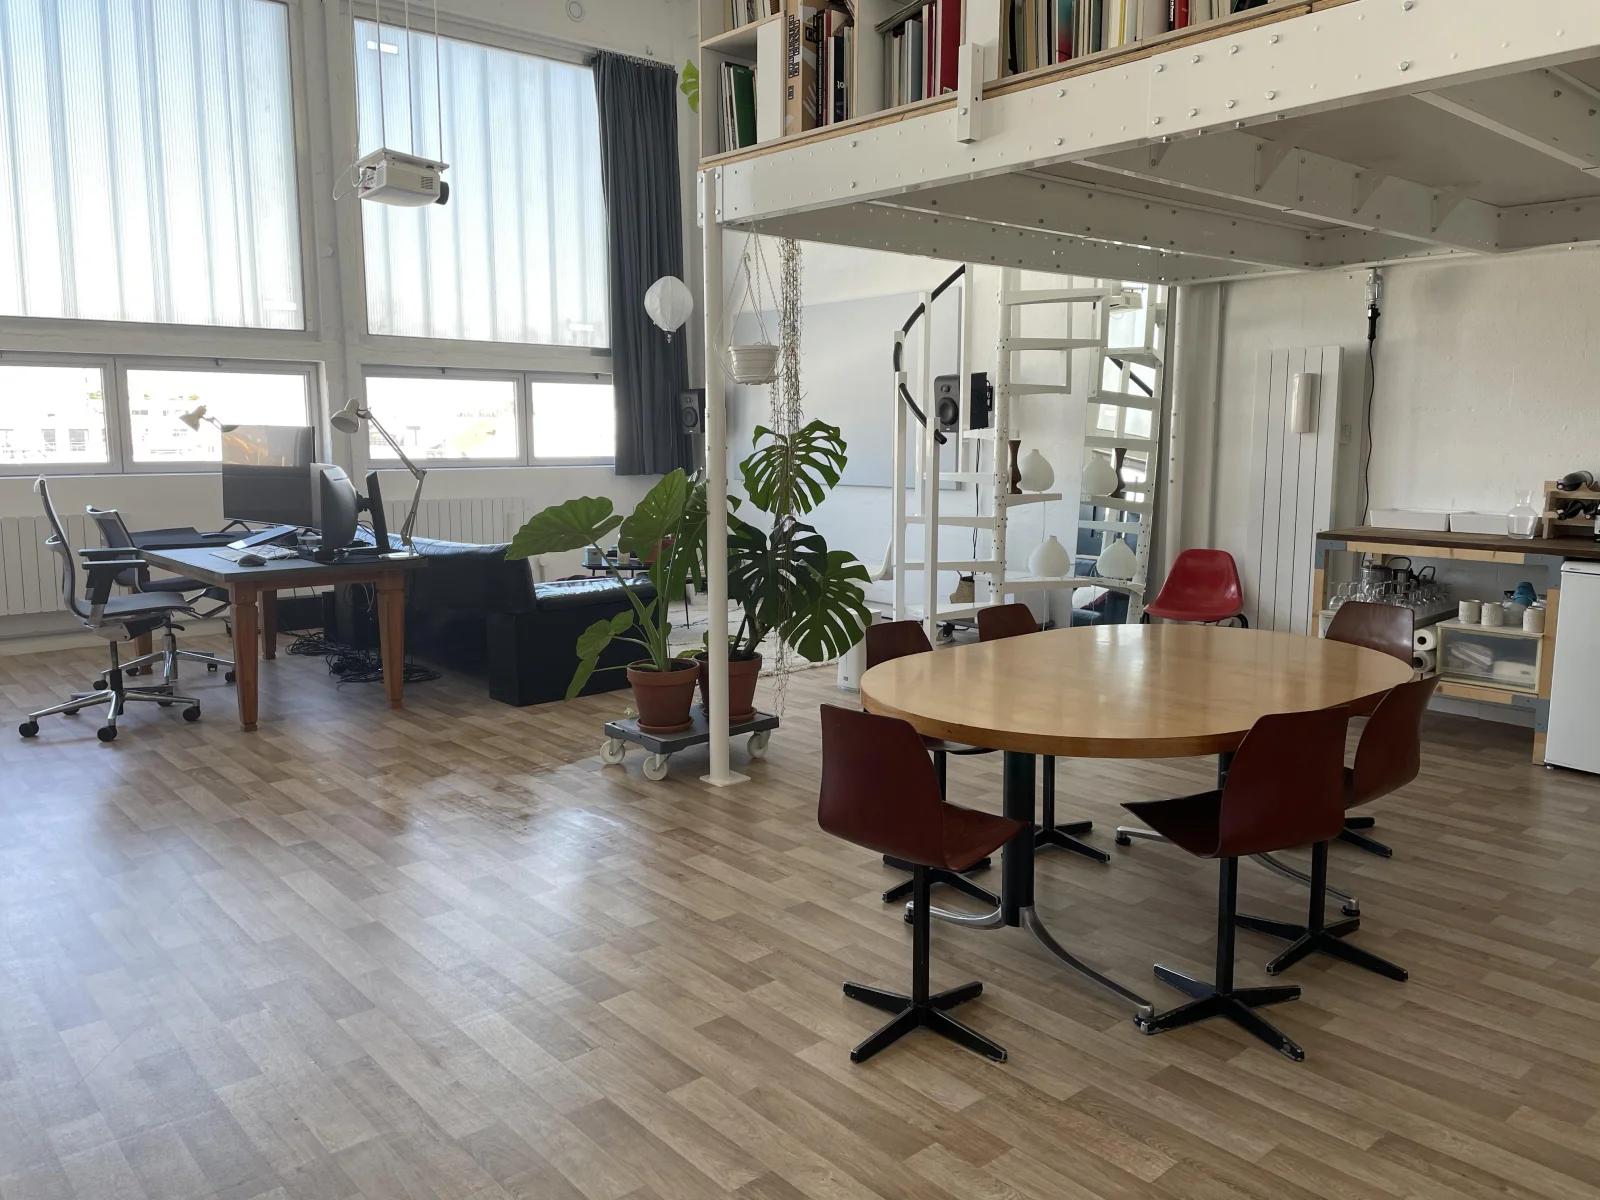 Meeting room in Loft / Artist's studio - 0